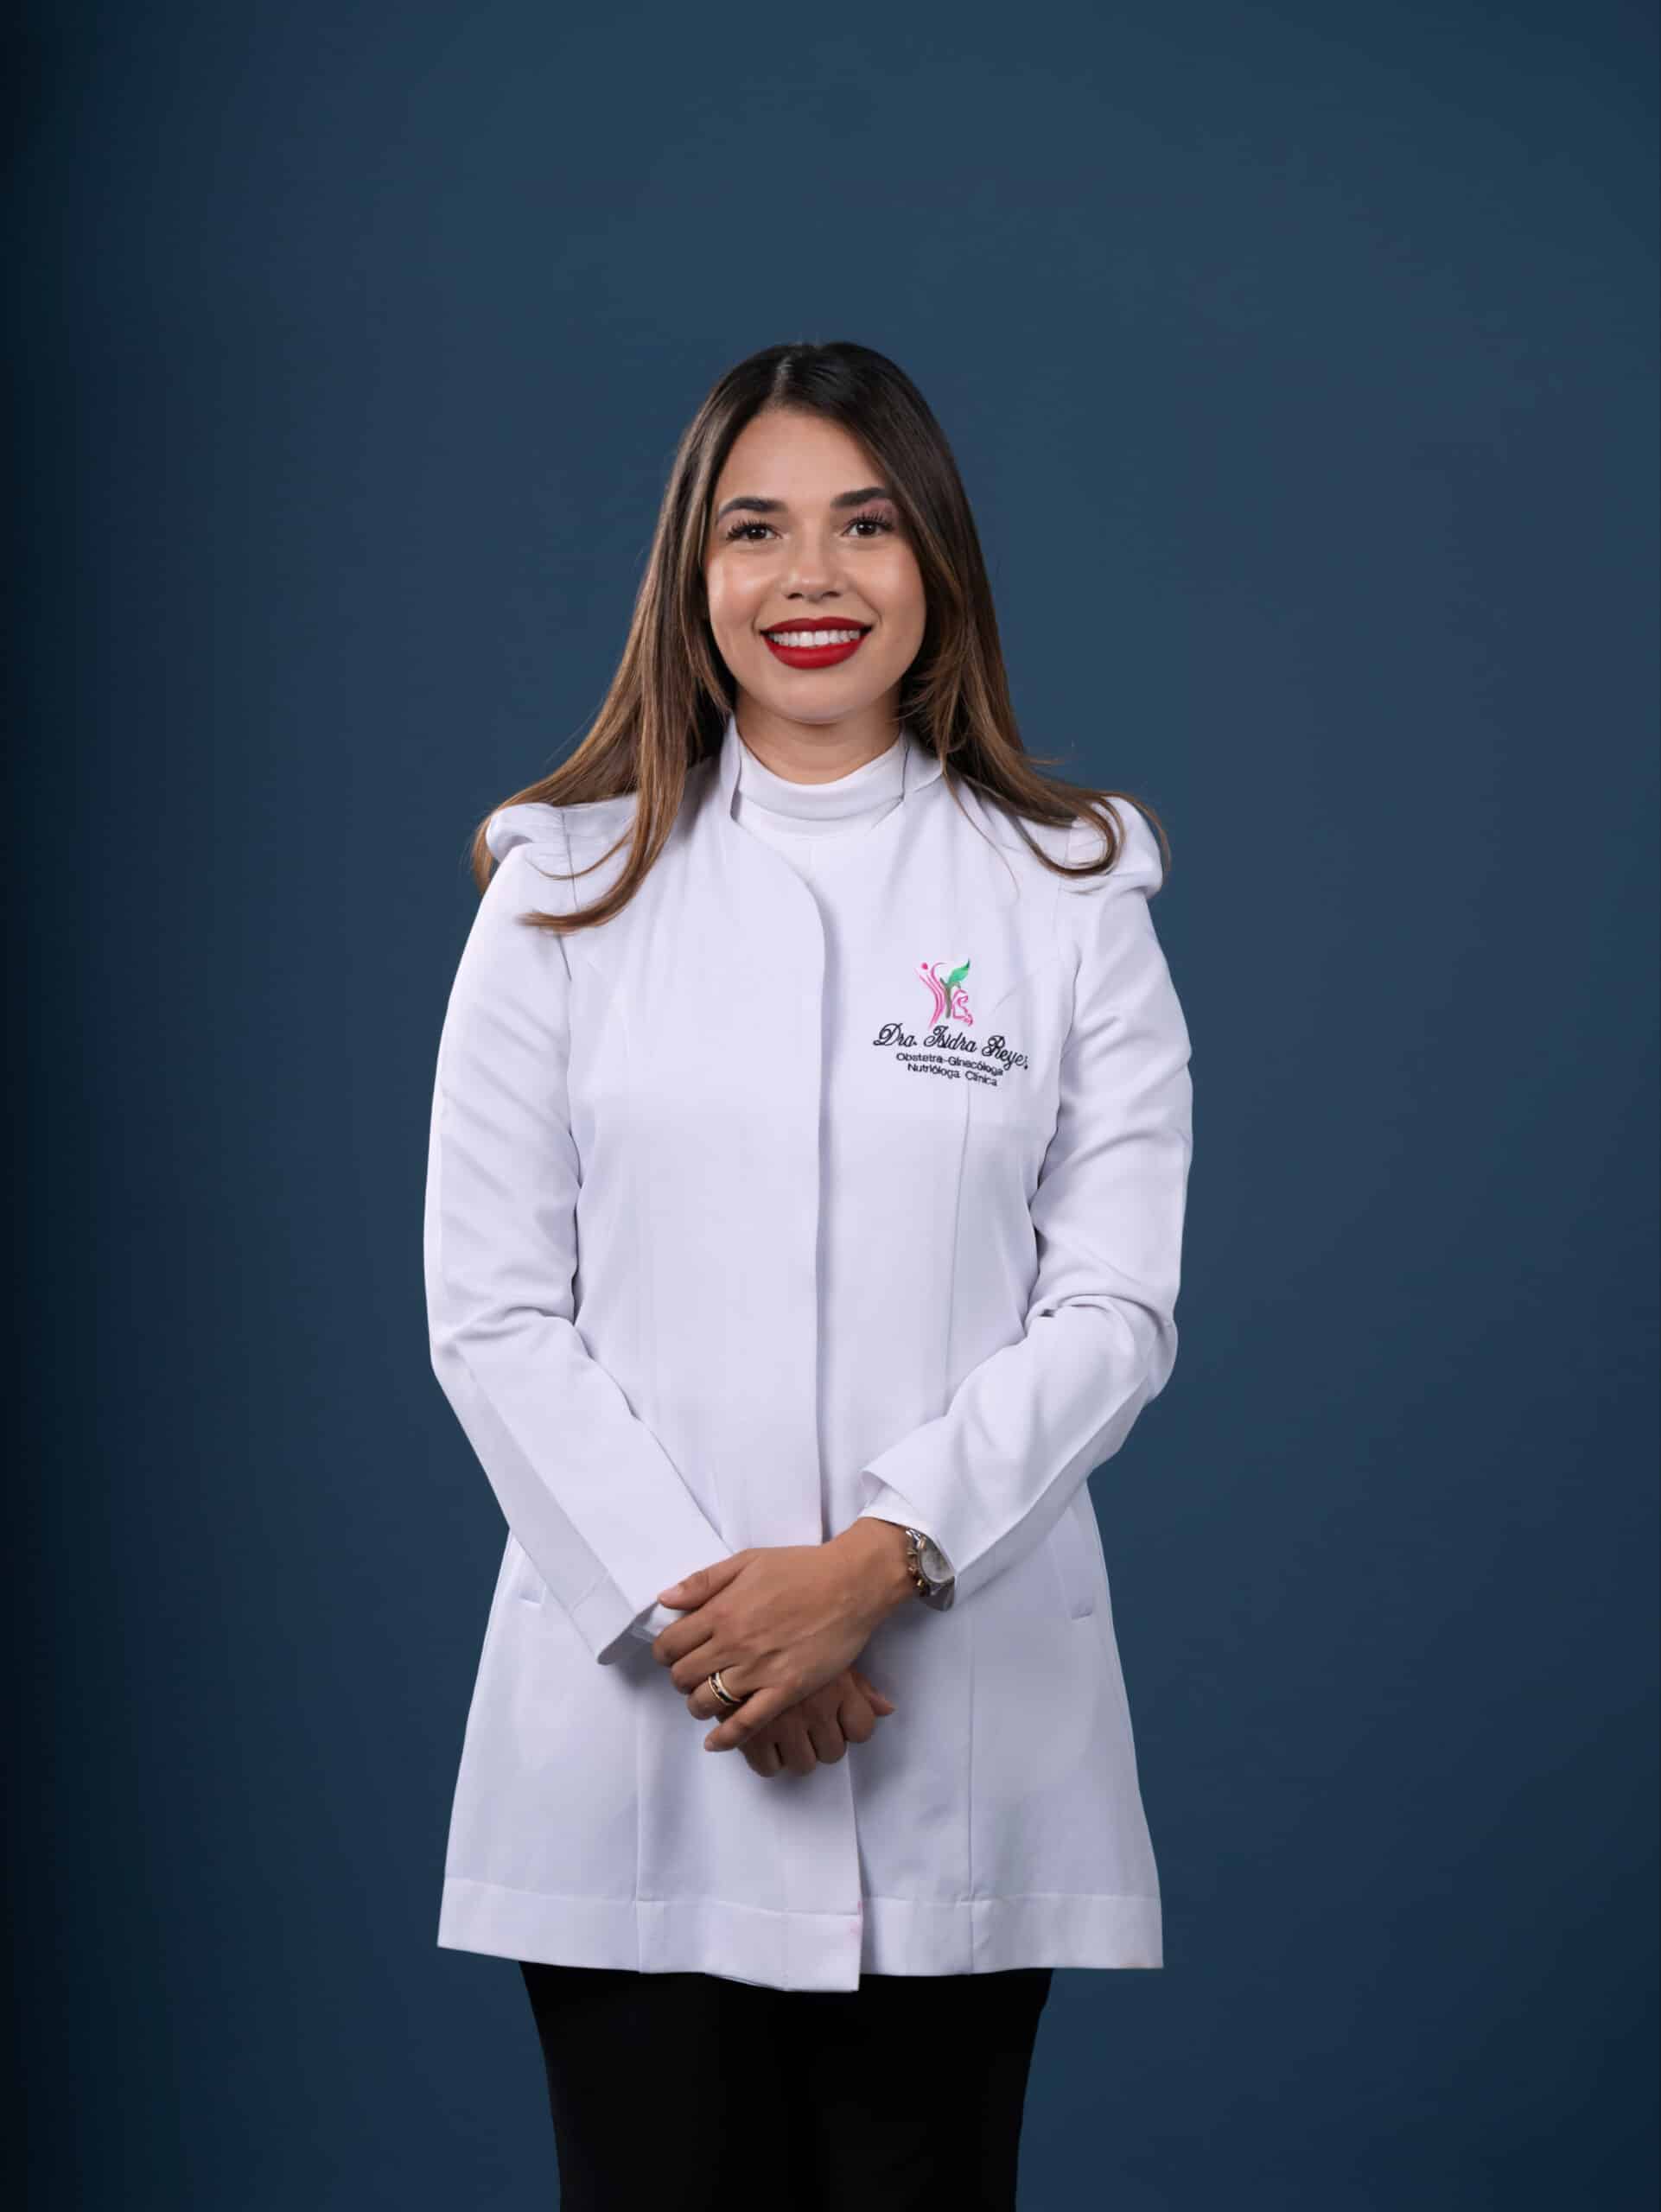 Dra. Isidra Reyes